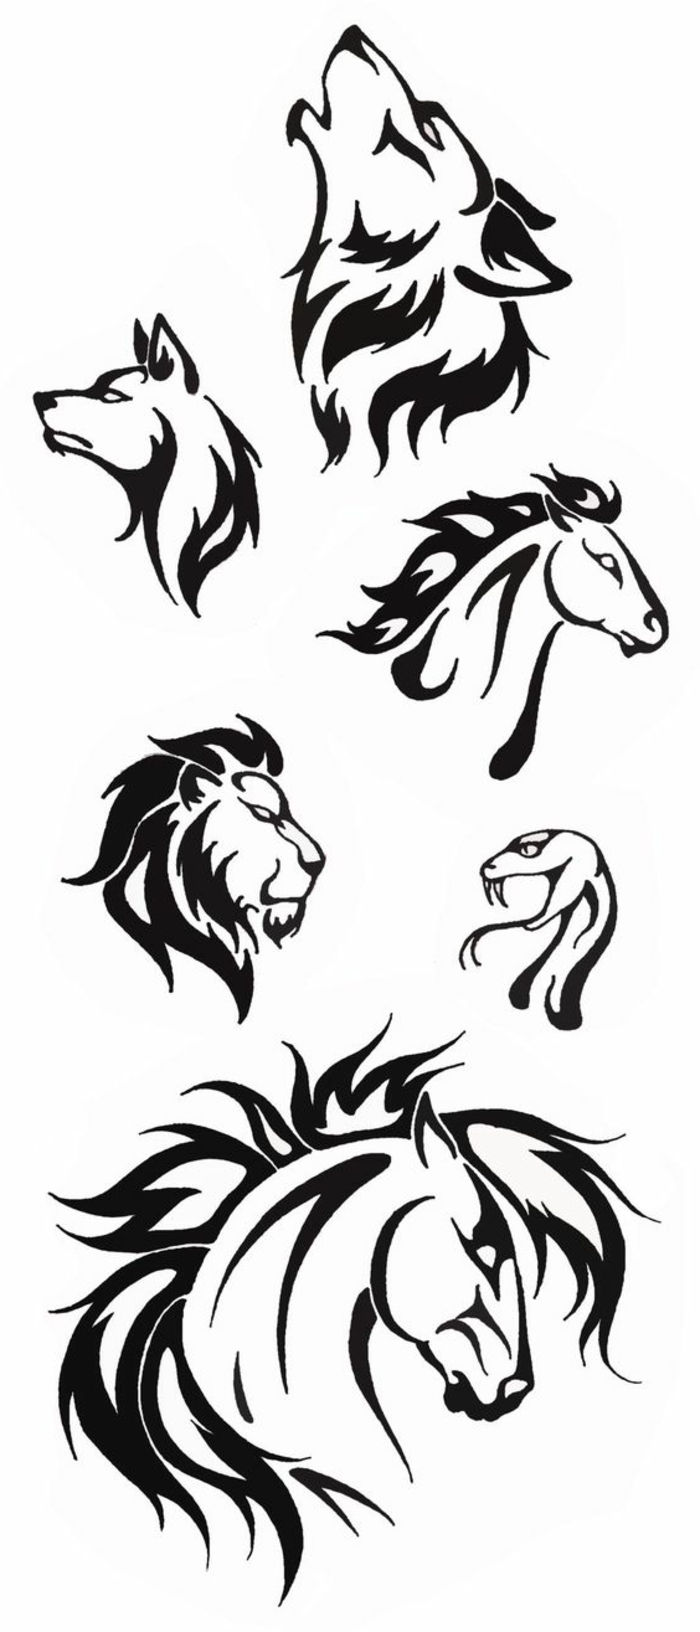 Čia parodysime skirtingas idėjas juodosioms tatuiruotėms - vilkai, liūtys, du arkliai ir gyvatė